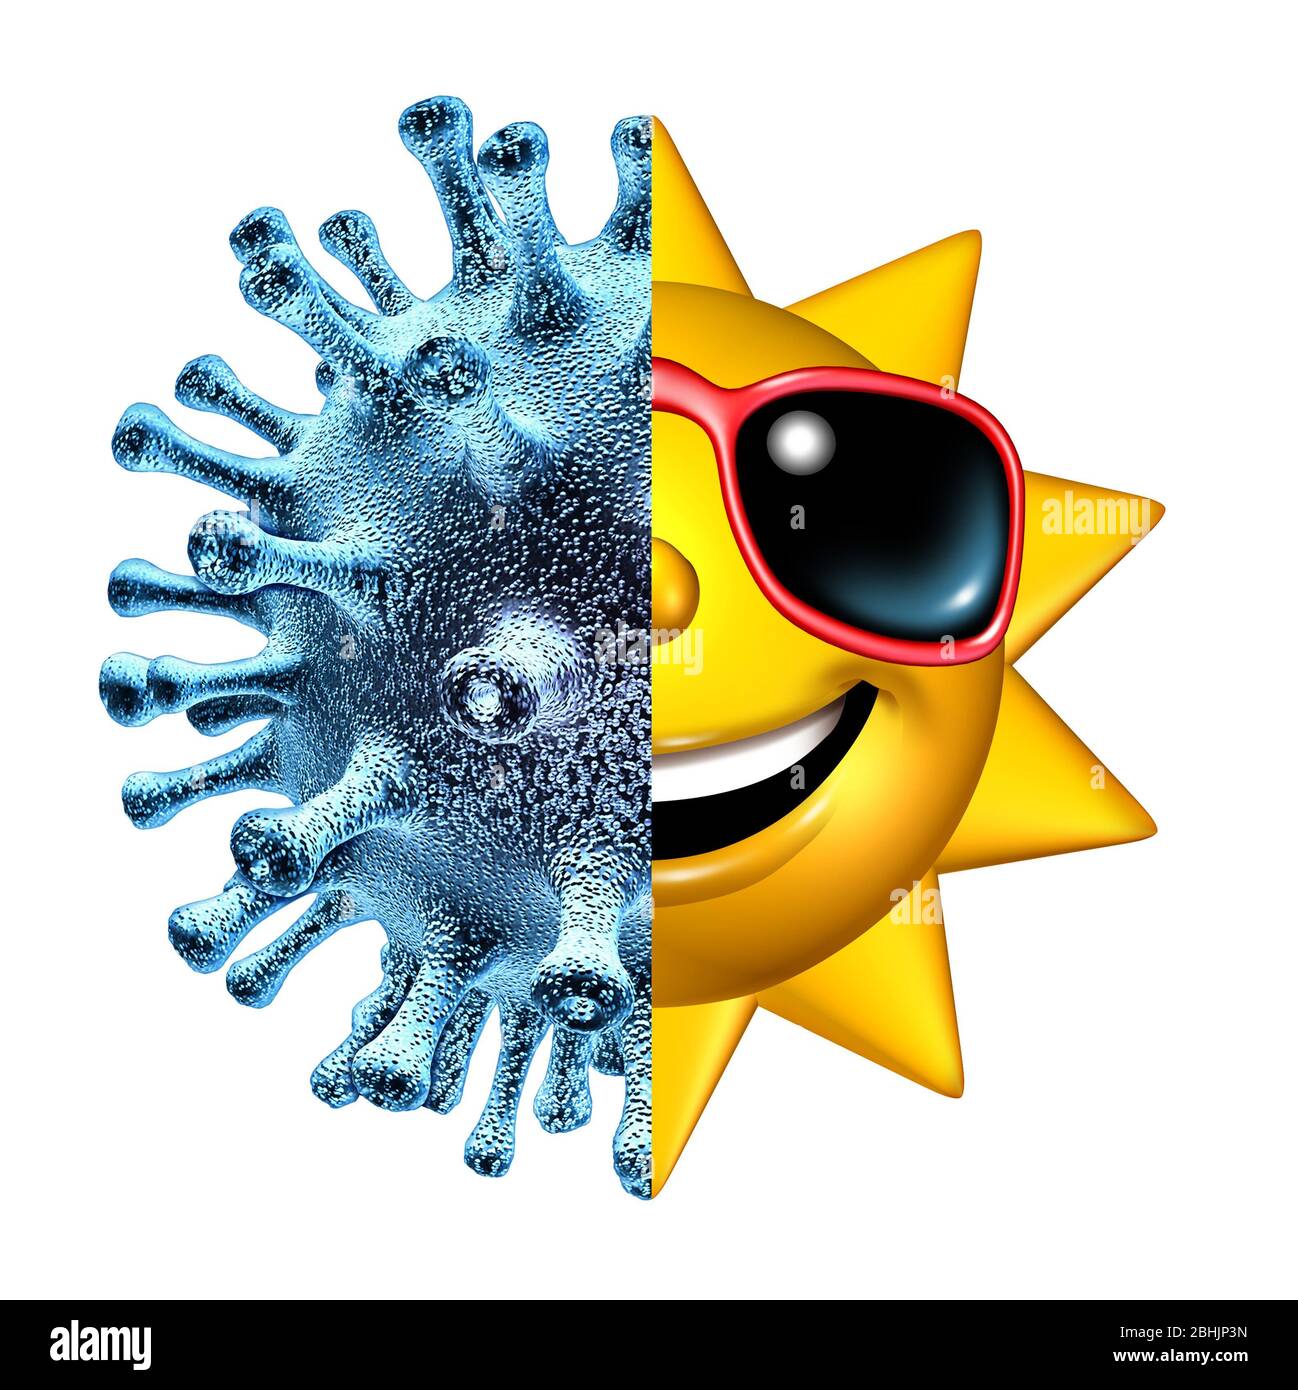 Malattia e recupero come simbolo medico e sanitario per il recupero da una malattia contagiosa come coronavirus o covid-19 e infezione da virus influenzale. Foto Stock